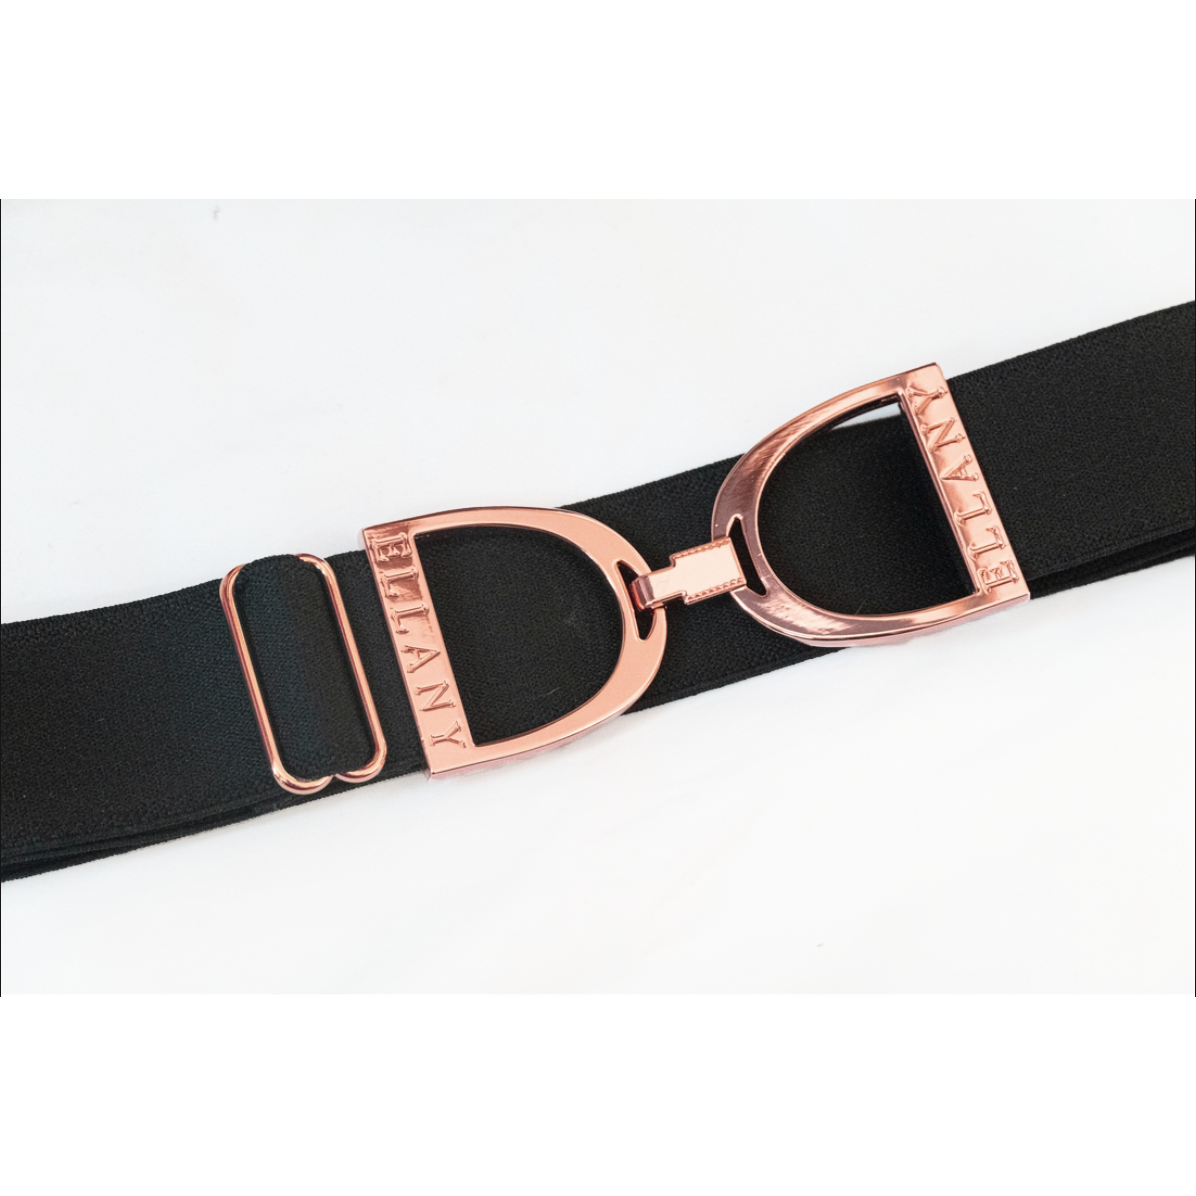 Ellany Equestrian Rose Gold Stirrup Belt 1.5 IN (Black) Accessories 